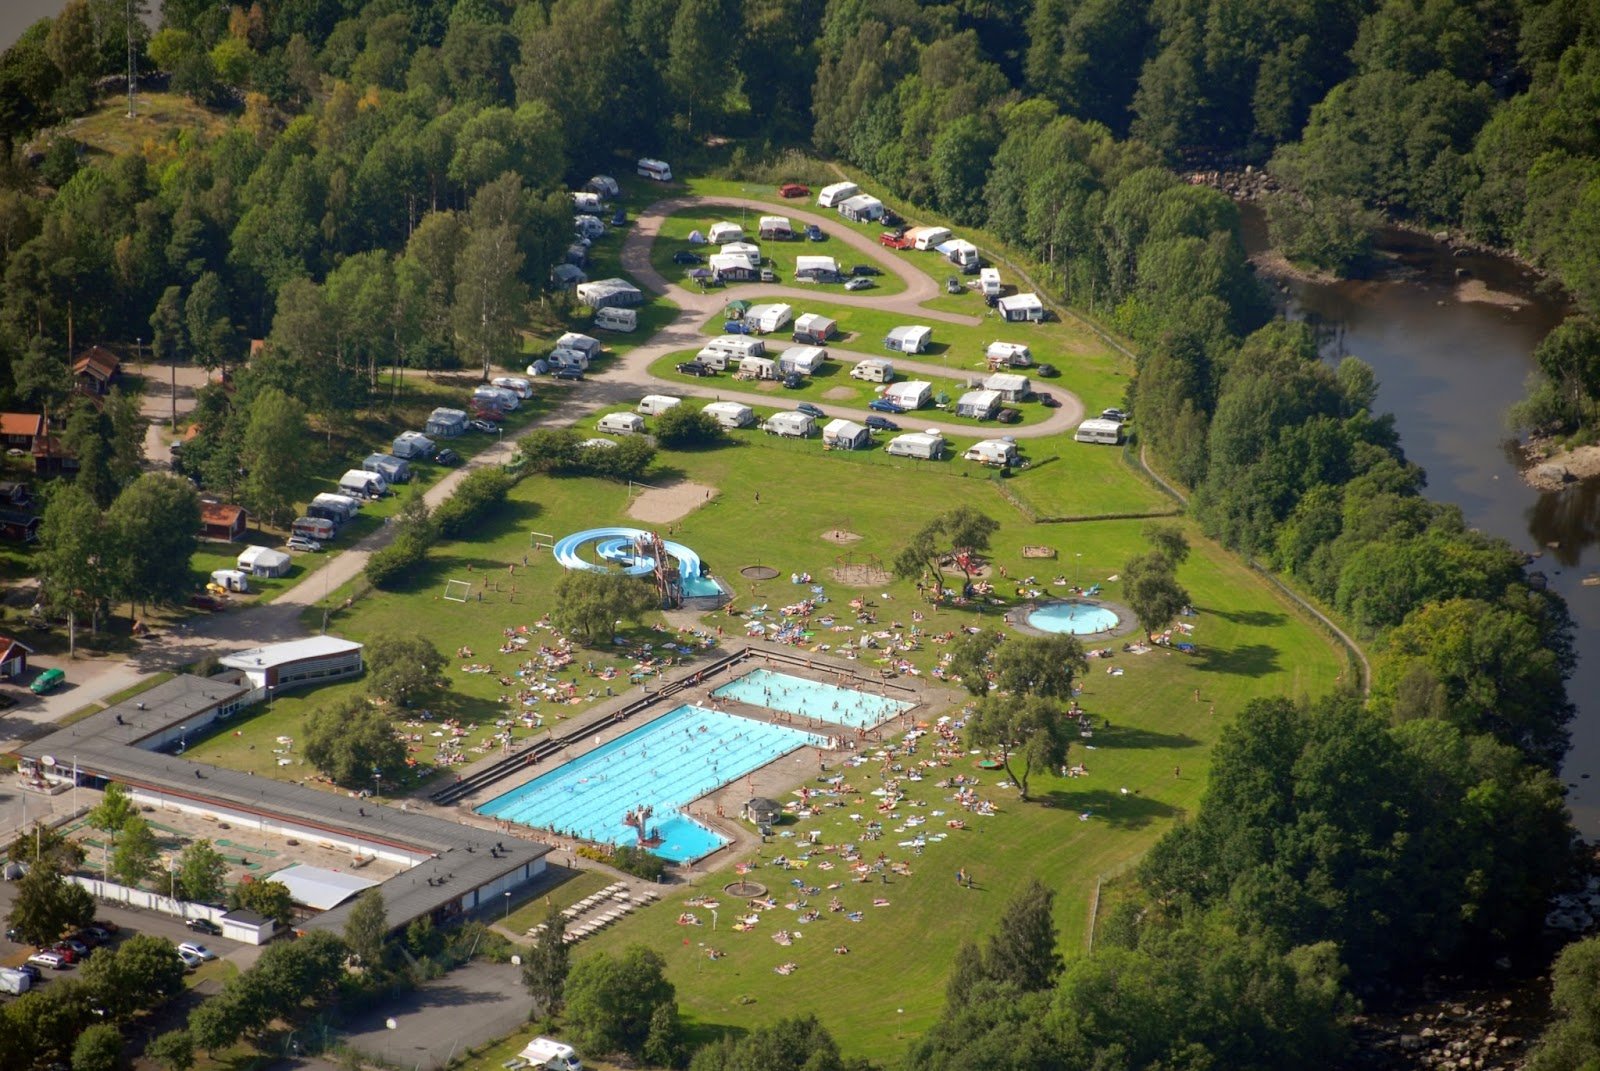 Skantzö Bad & Camping (Skantzö Swimming & Camping) — Hallstahammar